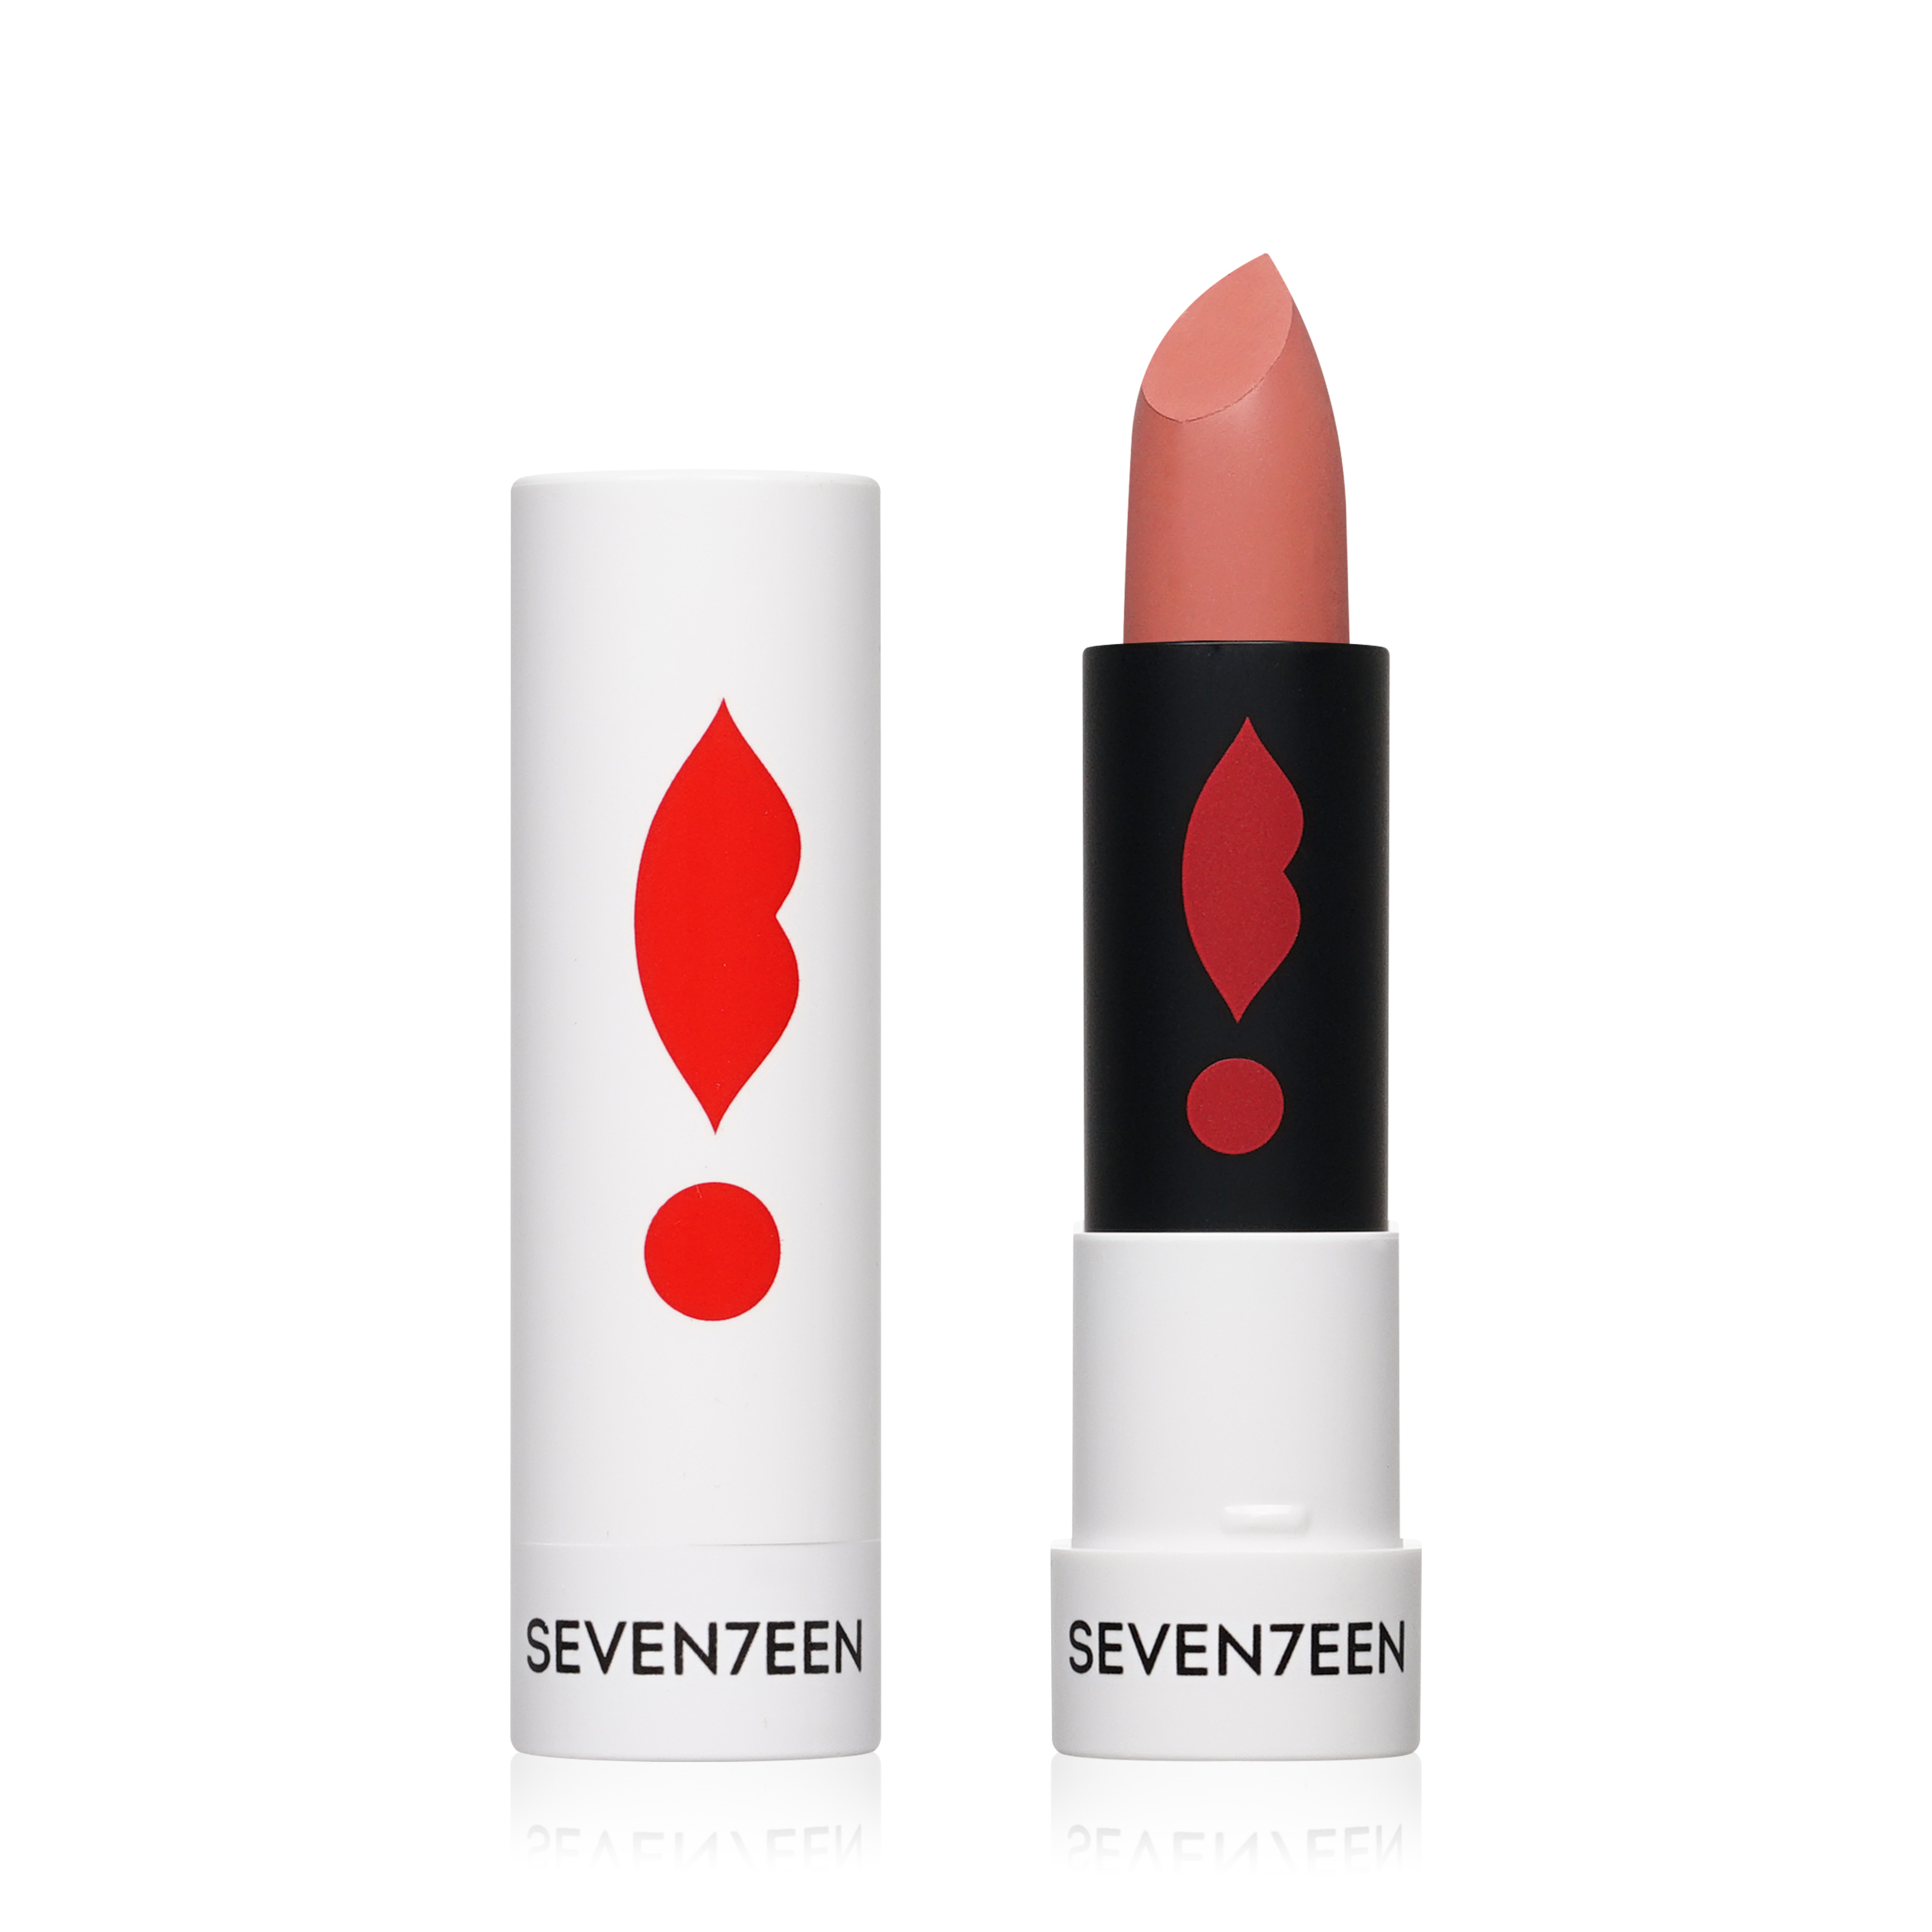 Помада для губ SEVENTEEN Matte Lasting Lipstick SPF 15 матовая, тон 45, 5 г набор для макияжа seventeen карандаш для губ тон 03 карандаш для глаз тон 10